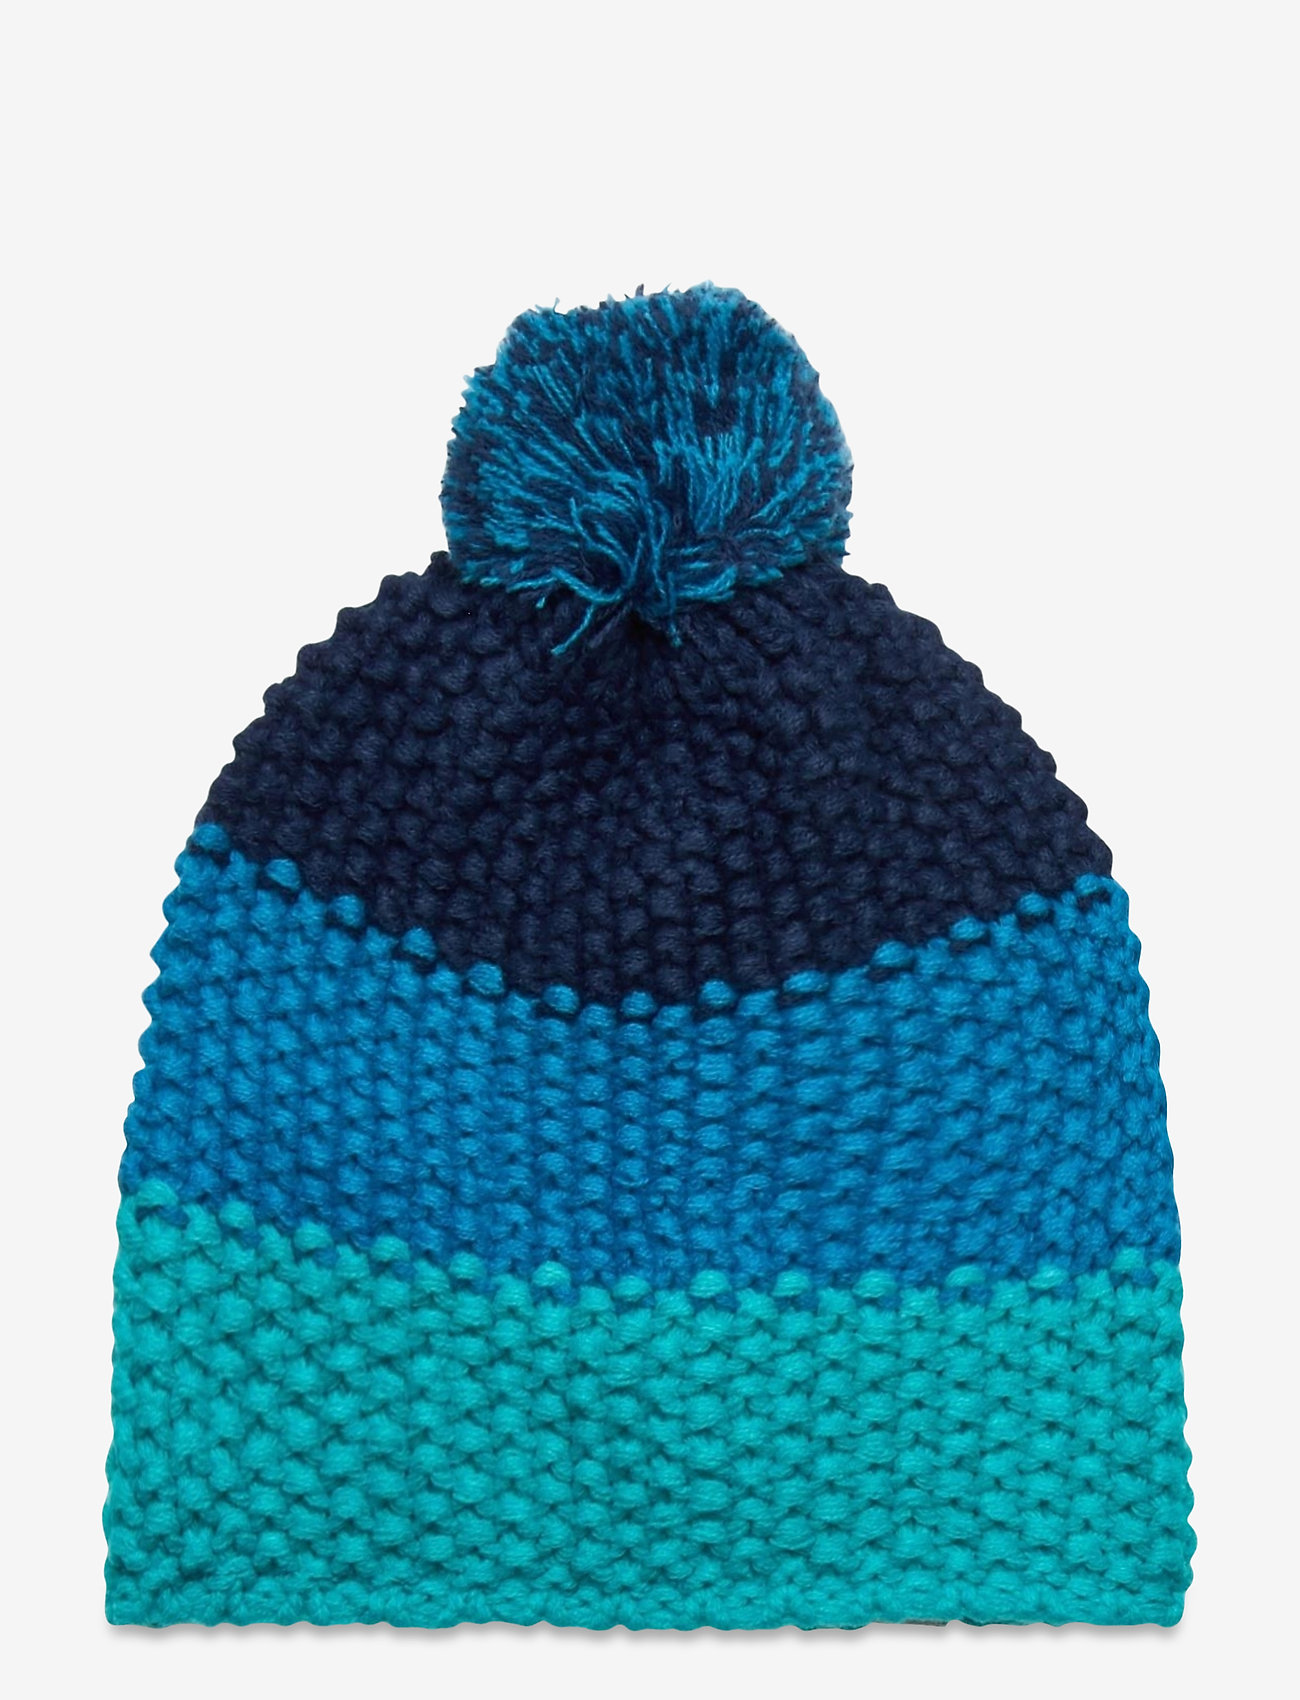 Color Kids - Dokka hat - laveste priser - blue aster - 0